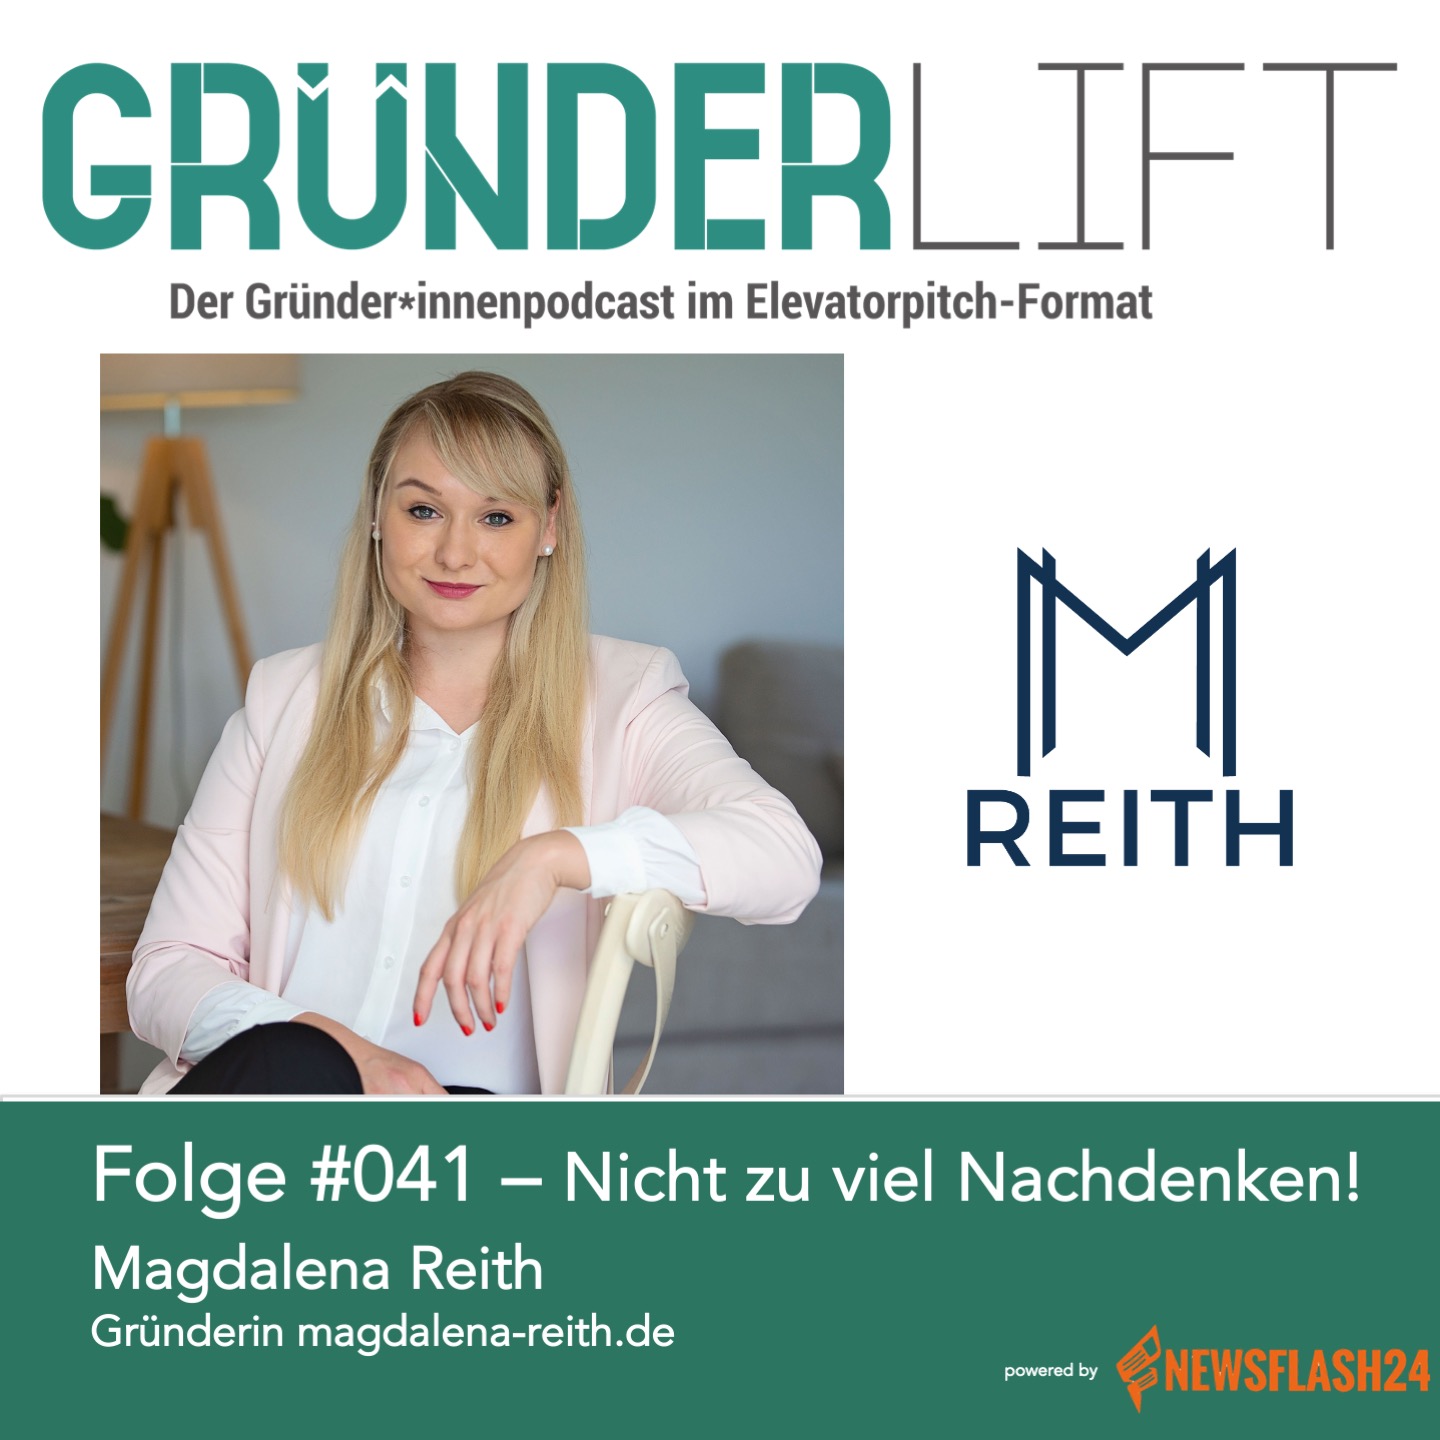 GründerLIFT #041 – Nicht zu viel Nachdenken! - Mit Magdalena Reith